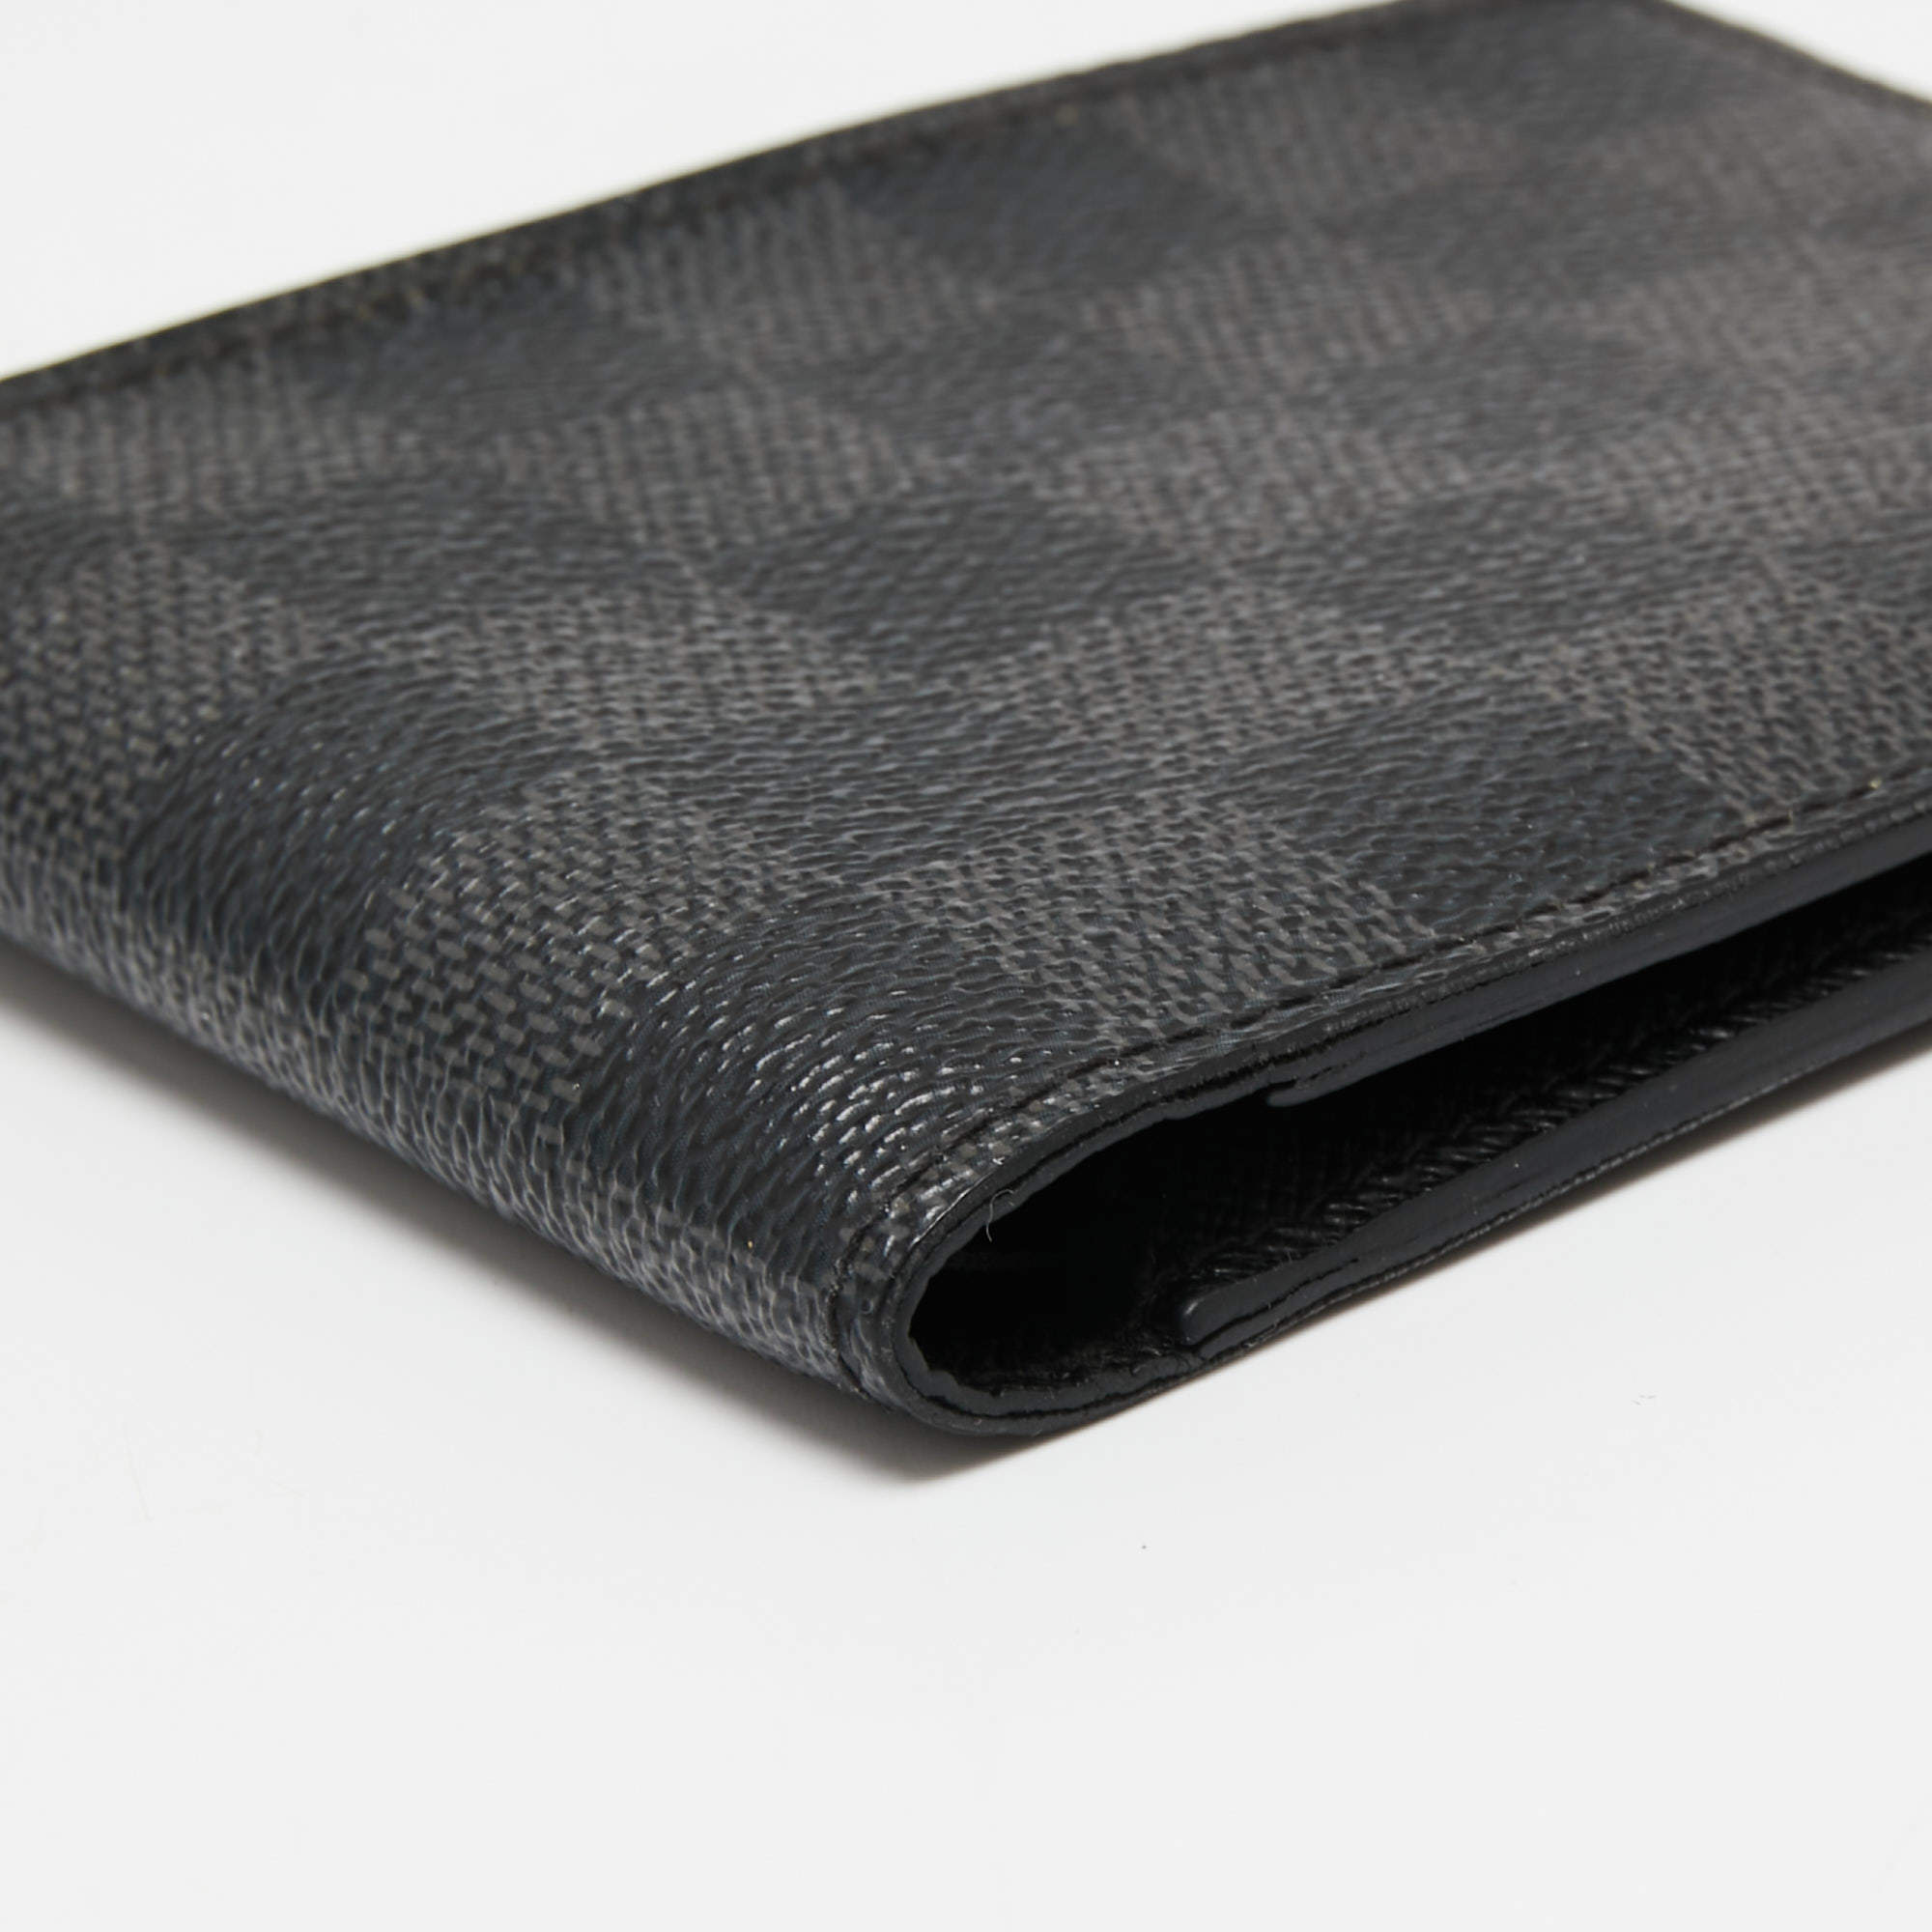 Louis Vuitton Multiple Wallet Limited Edition Damier Graphite Black 1781632